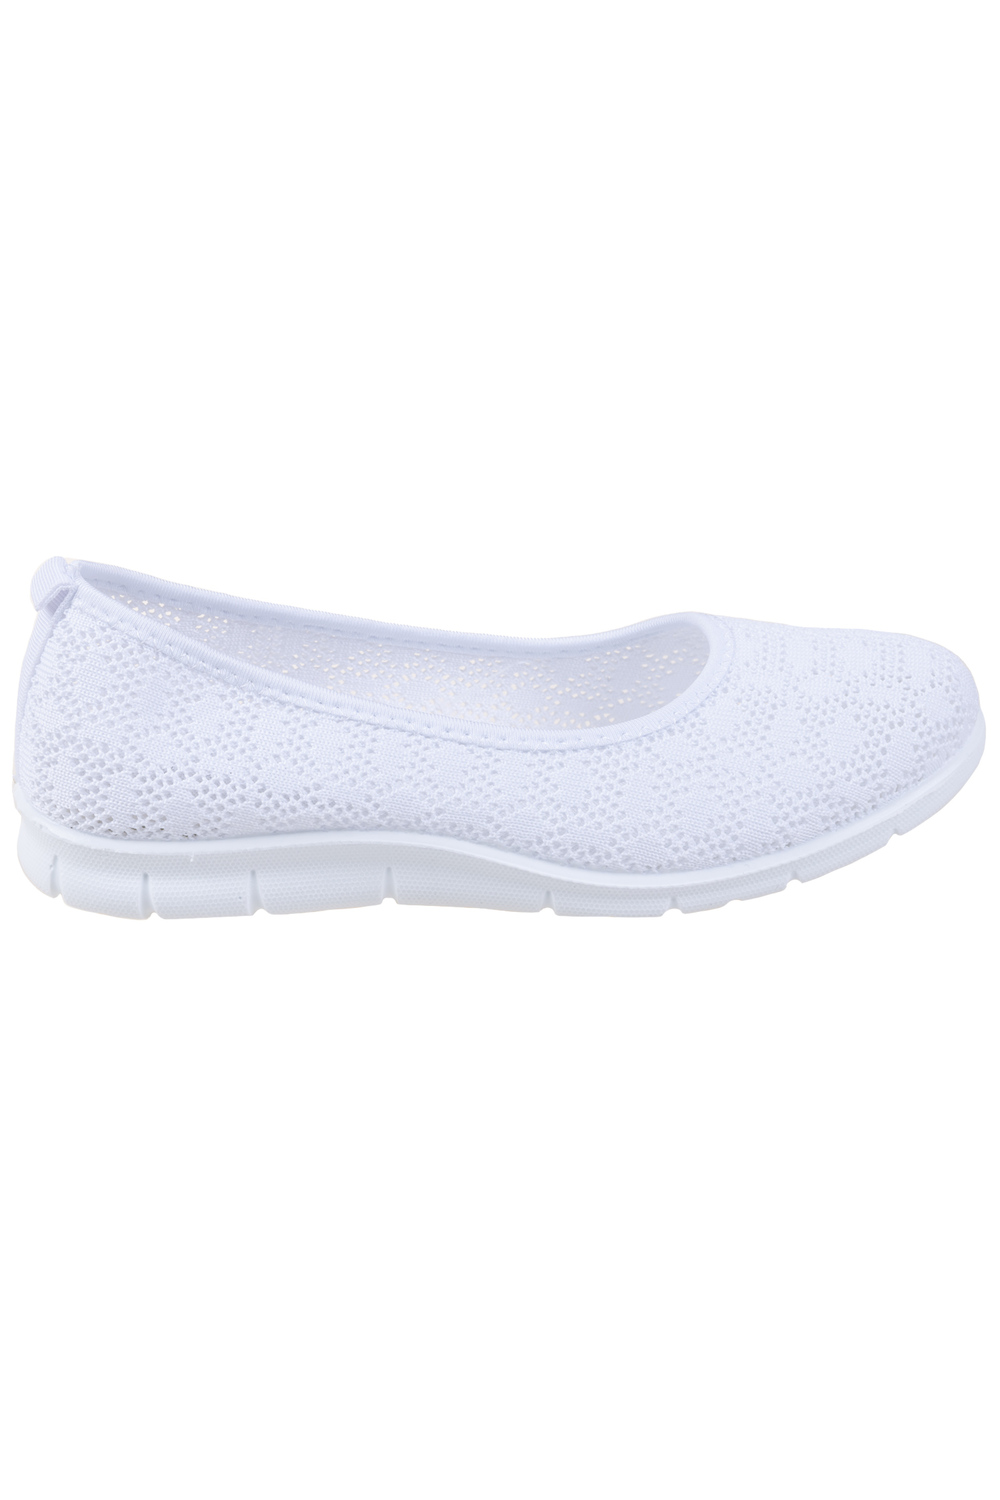 Crochet slip-on walking shoe - White